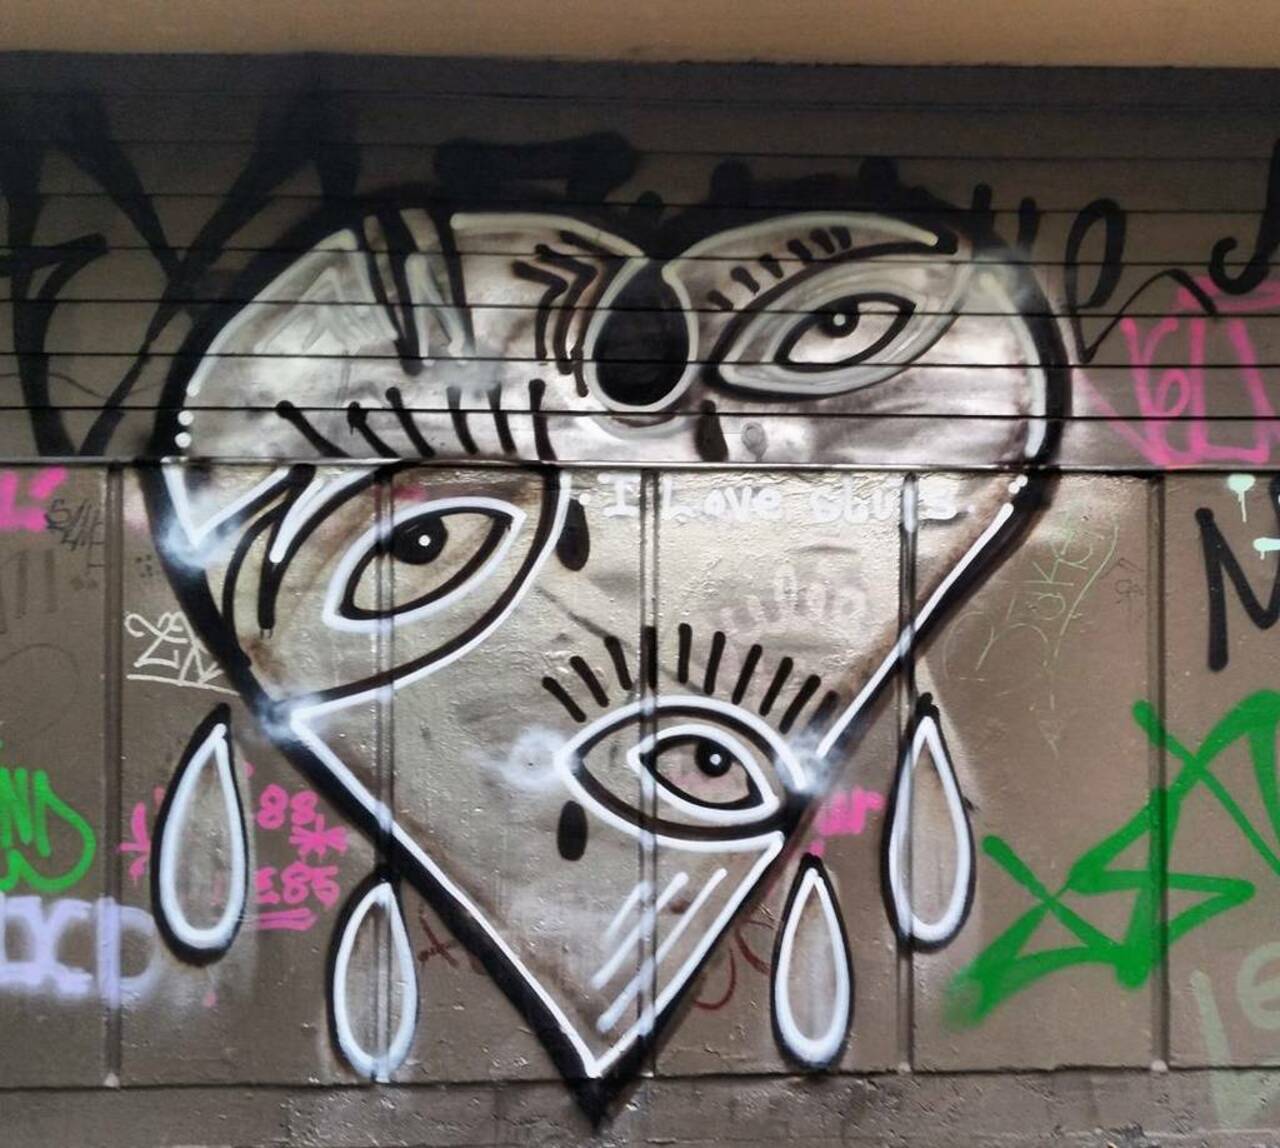 #streetart #urbanart #streetartoslo #gatekunst #streetarteverywhere #gatekunstoslo #graffiti #graff #handstyles by … https://t.co/WeoHsxHuix